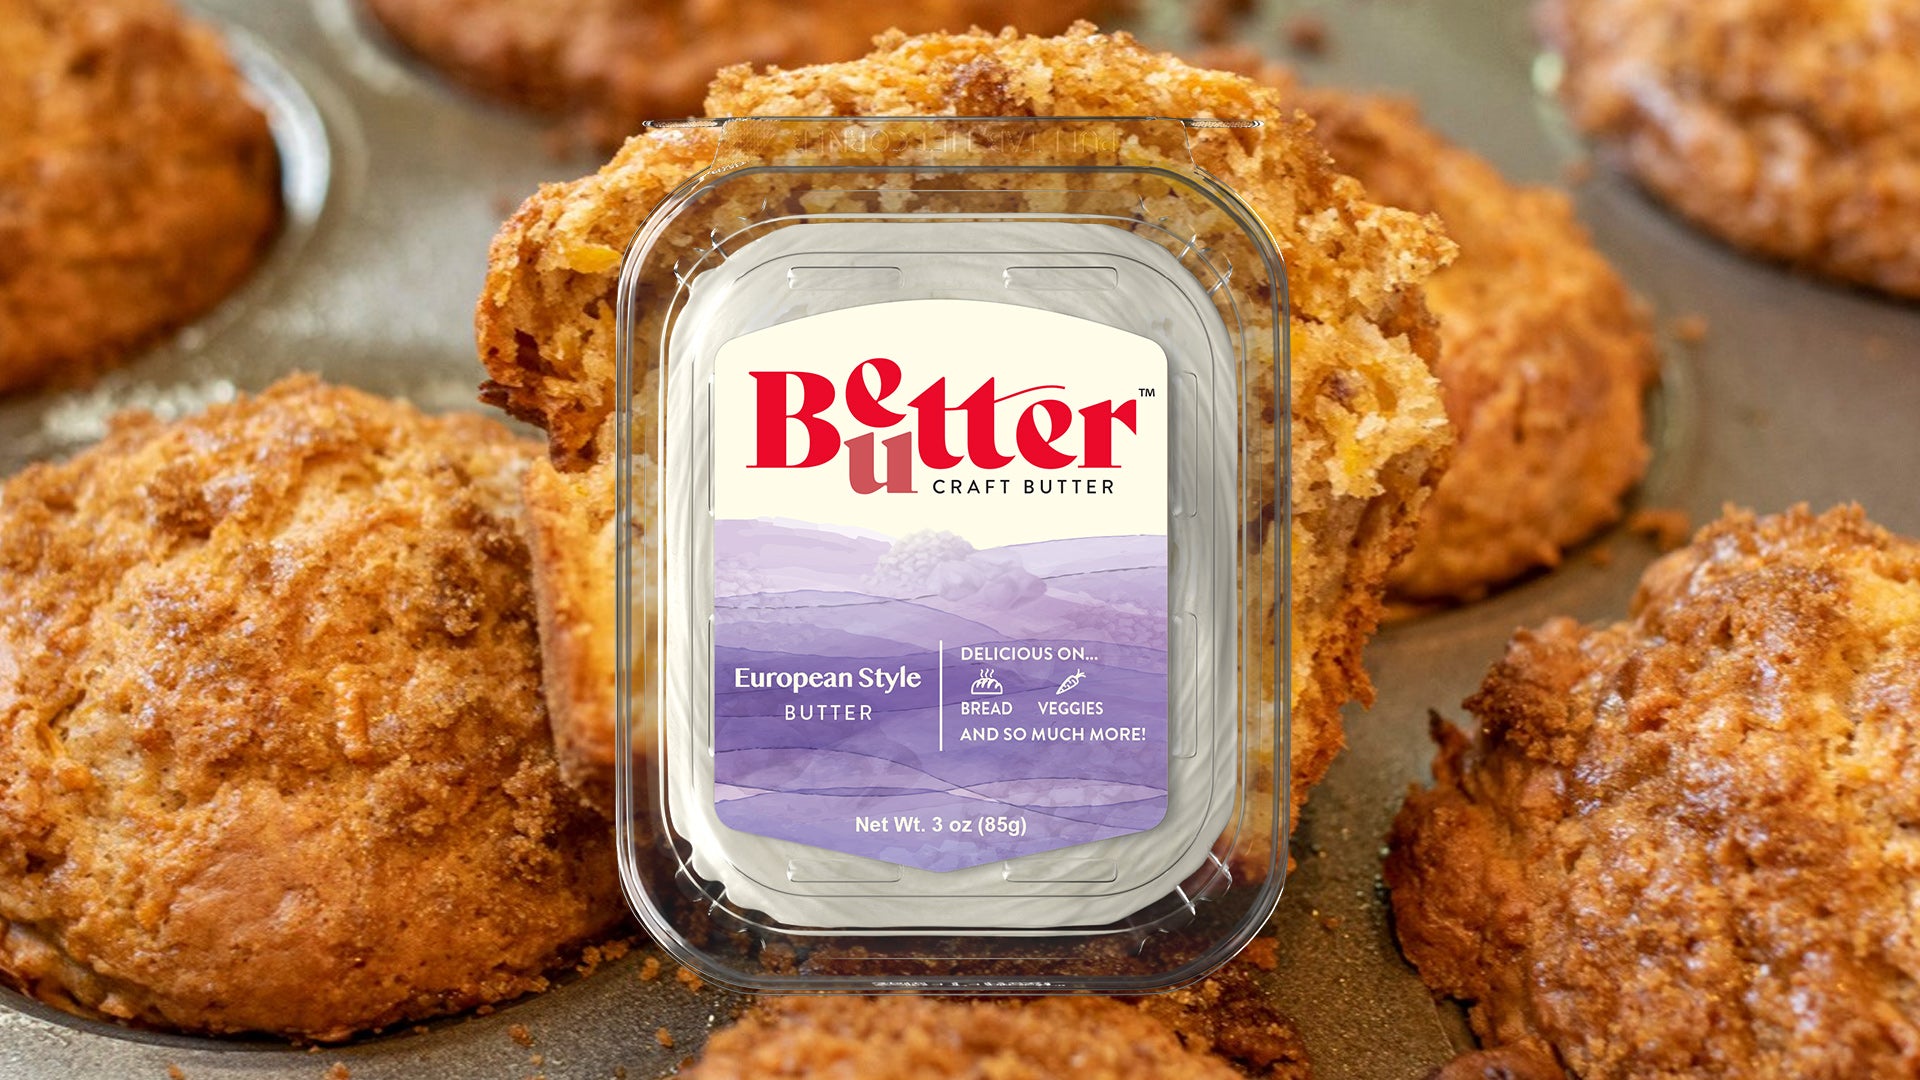 European Style Craft Butter